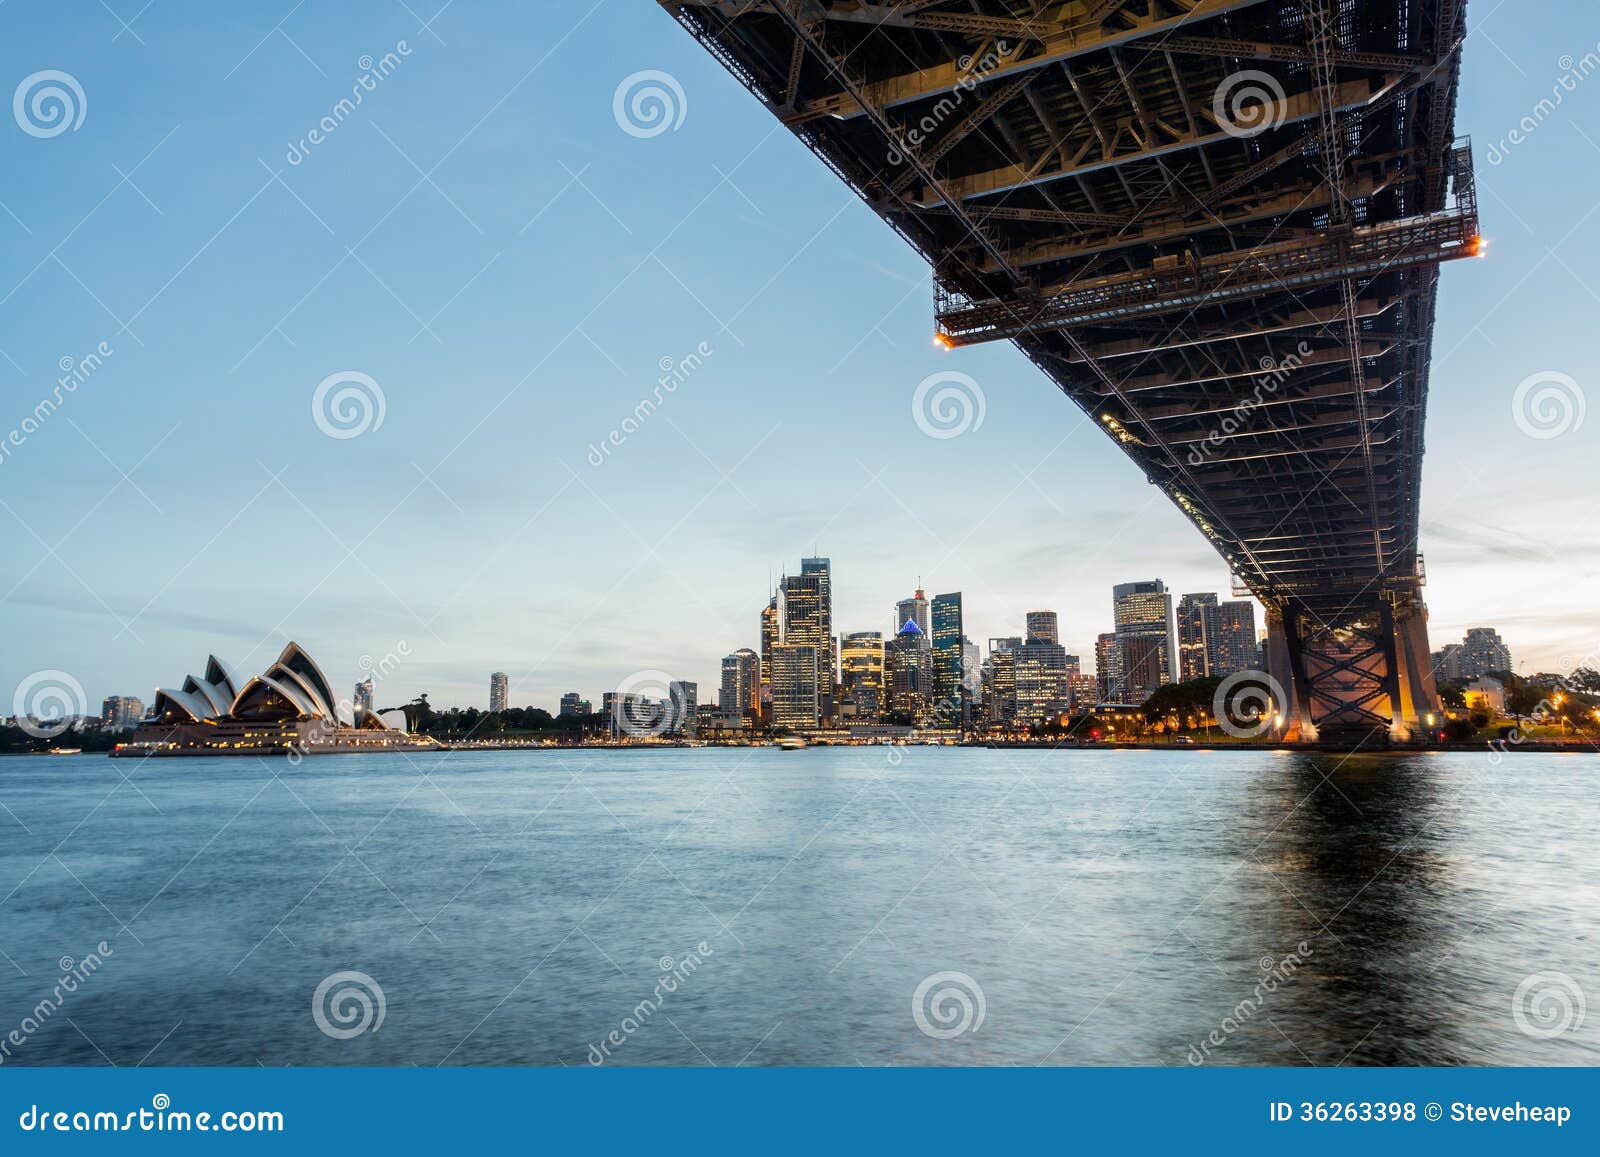 Port panoramique dramatique de Sydney de photo de coucher du soleil. Image panoramique en format large dramatique de Sydney au pont de coucher du soleil dans le premier plan. Inclut les roches, le théatre de traversier et de l'opéra, et une vue d'ensemble de CBD et l'eau dans le port